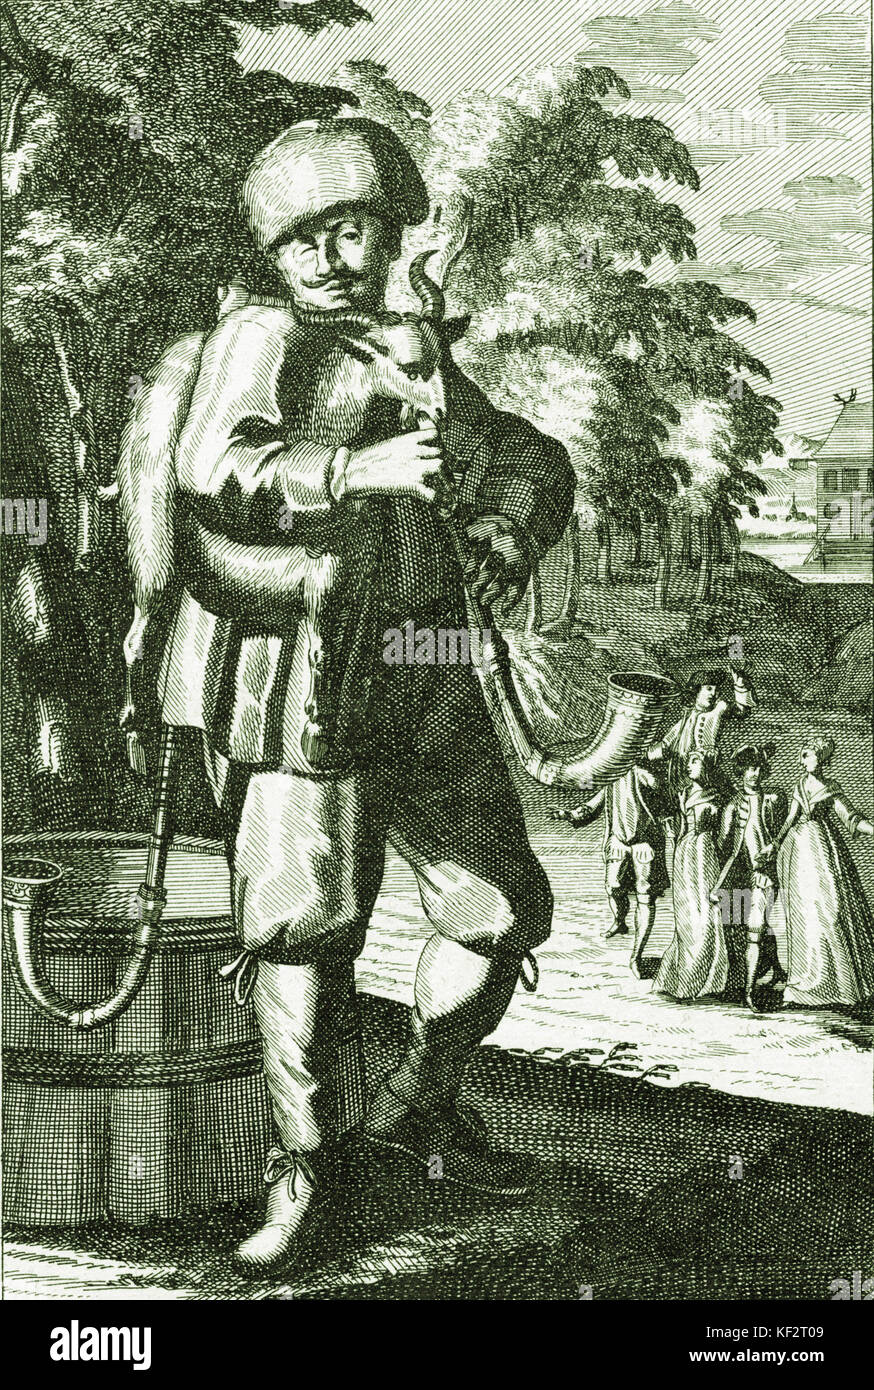 A principios del siglo xviii del hombre con gaitas. Aquí descrito como "cabra polaca". Grabado por J C Weigel (1661-1726). Gaita / gaiteiro Foto de stock